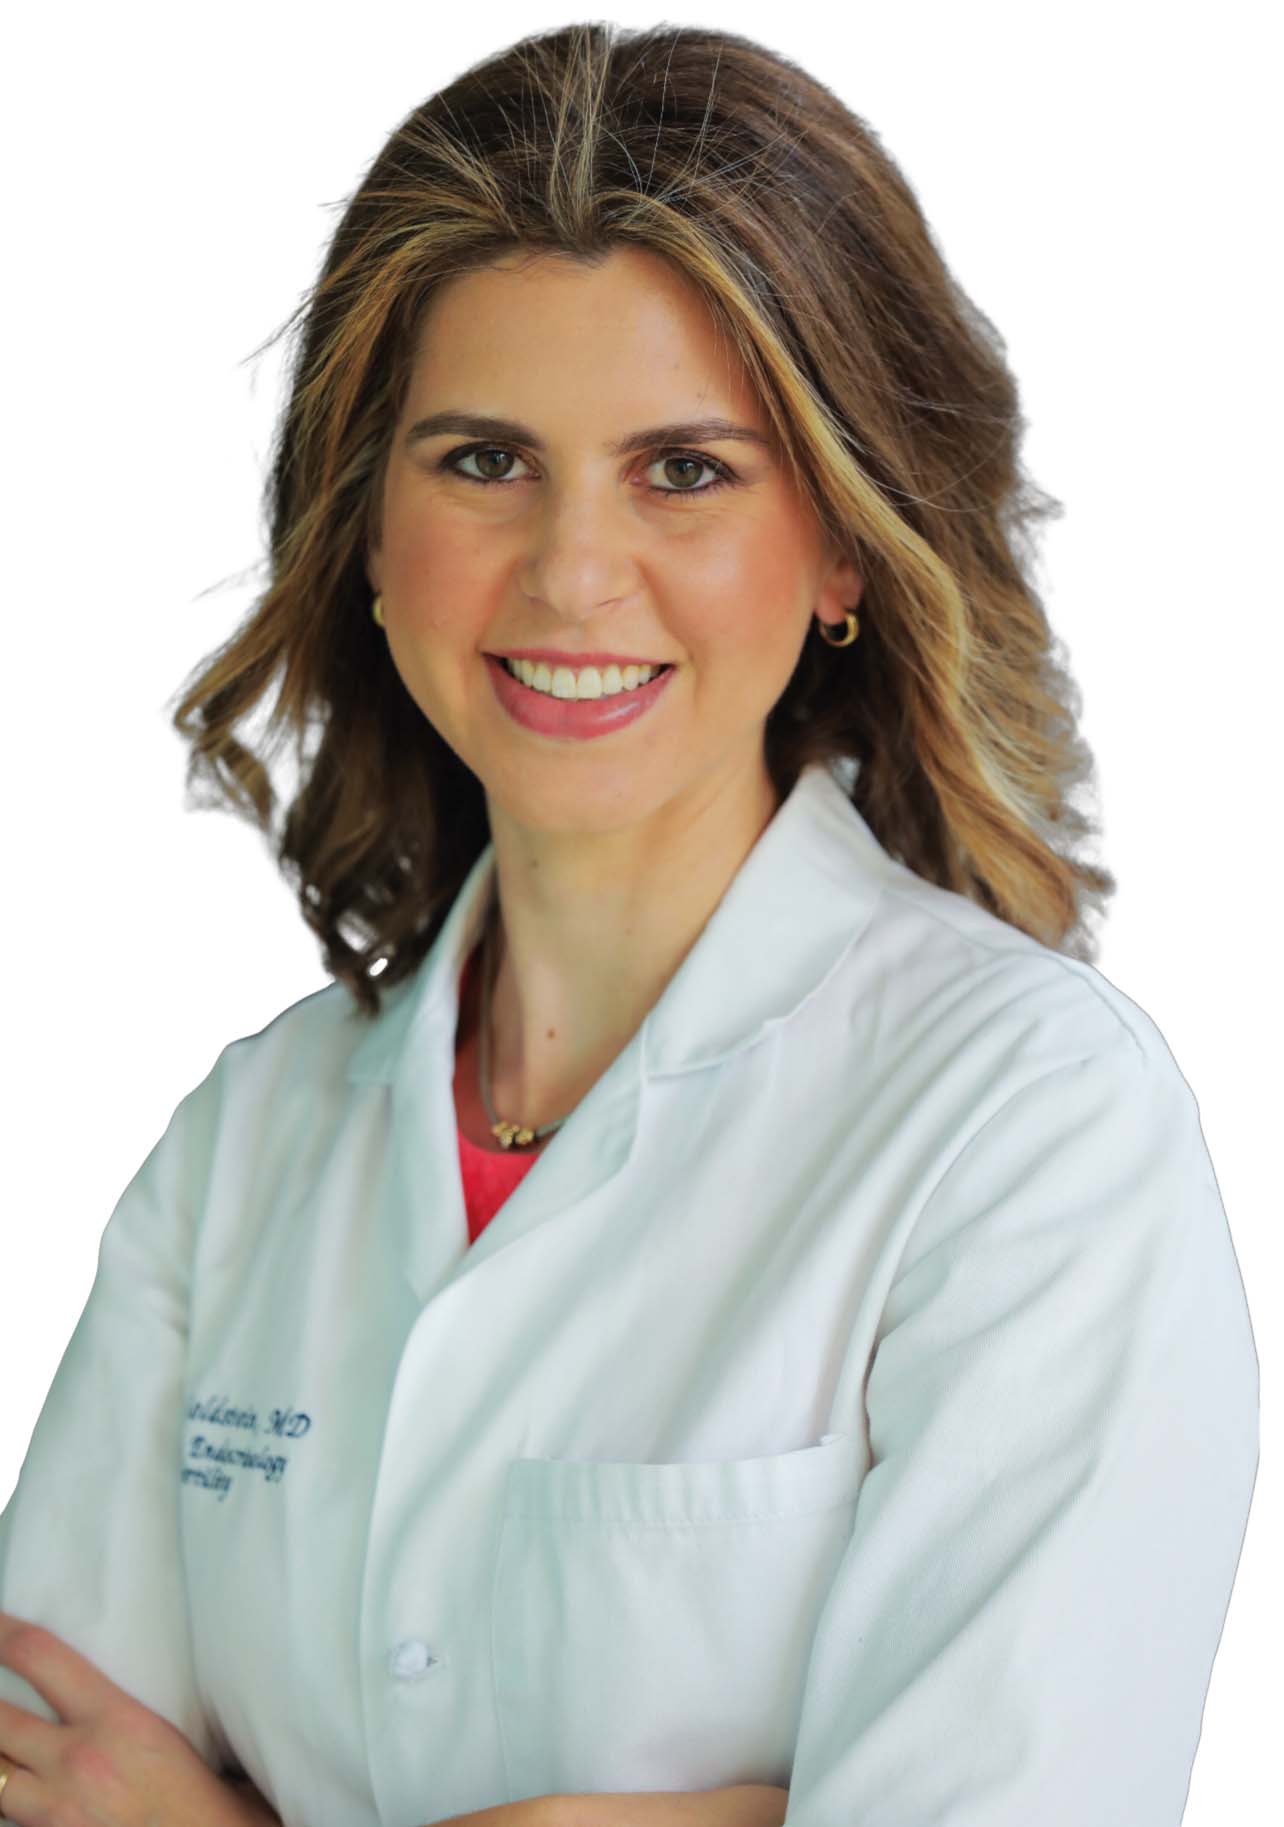 Ellen H. Goldstein MD, FACOG